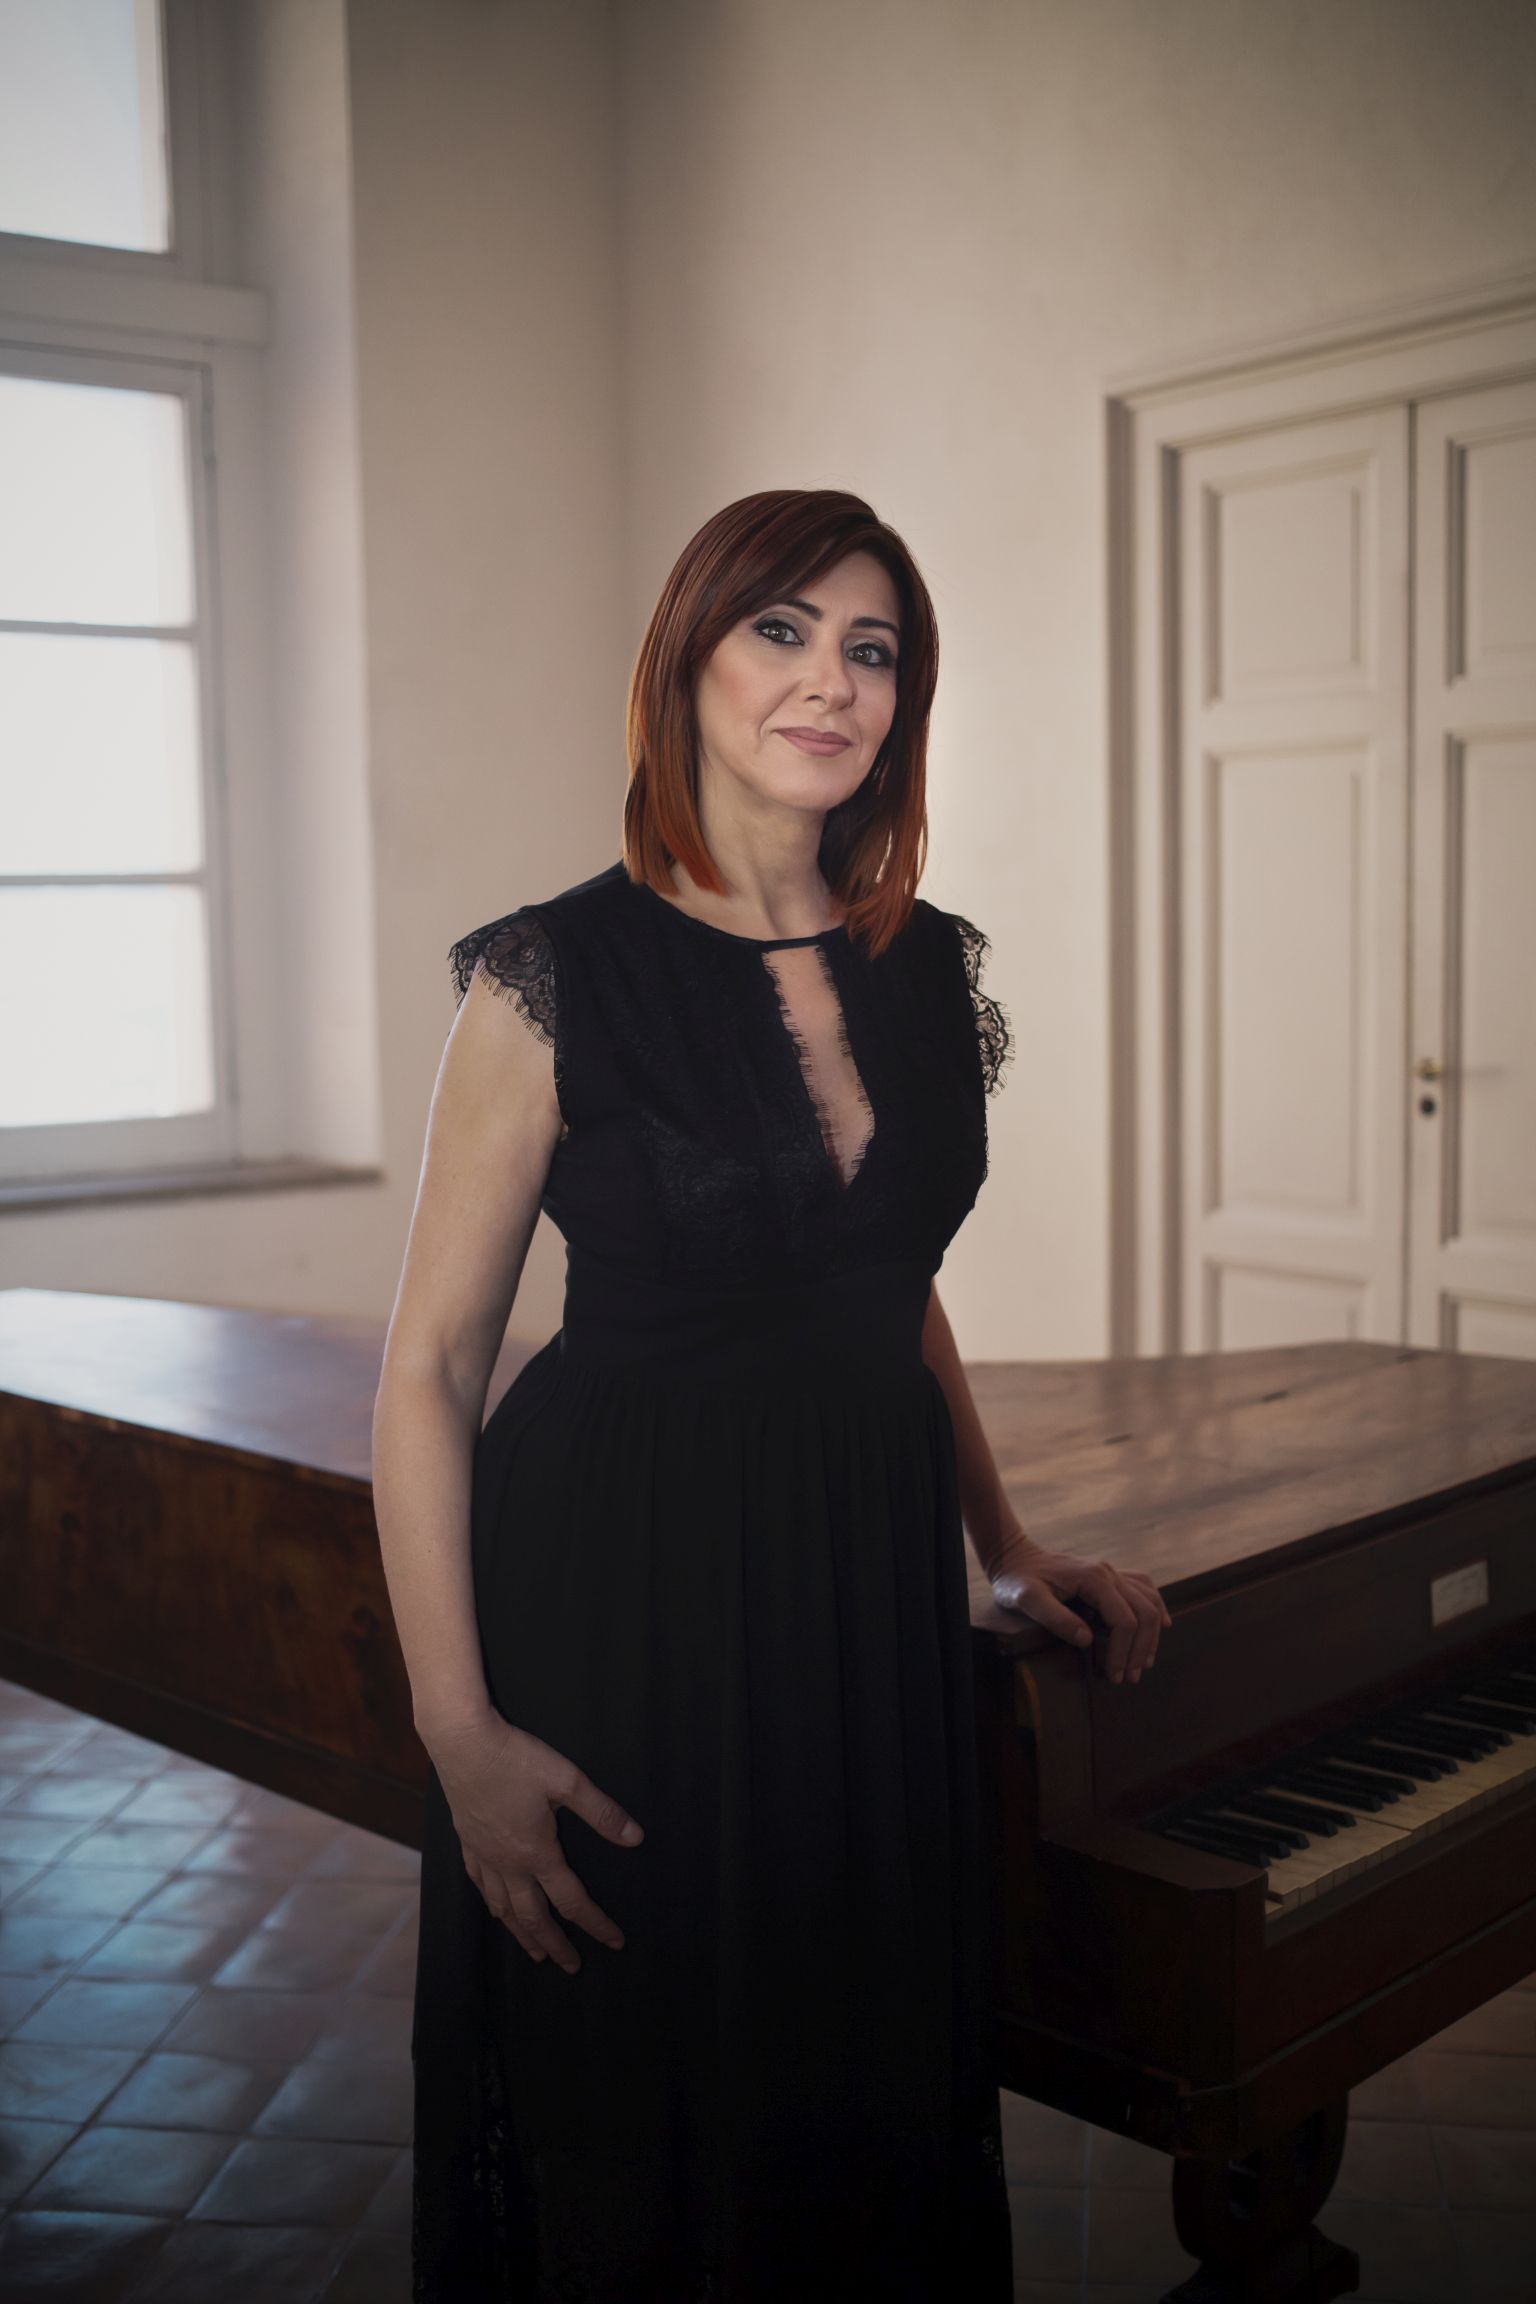 La pianista e compositrice Giuseppina Torre sarà a Barletta, ospite dell’Associazione Centro Studi “Barletta in Rosa”